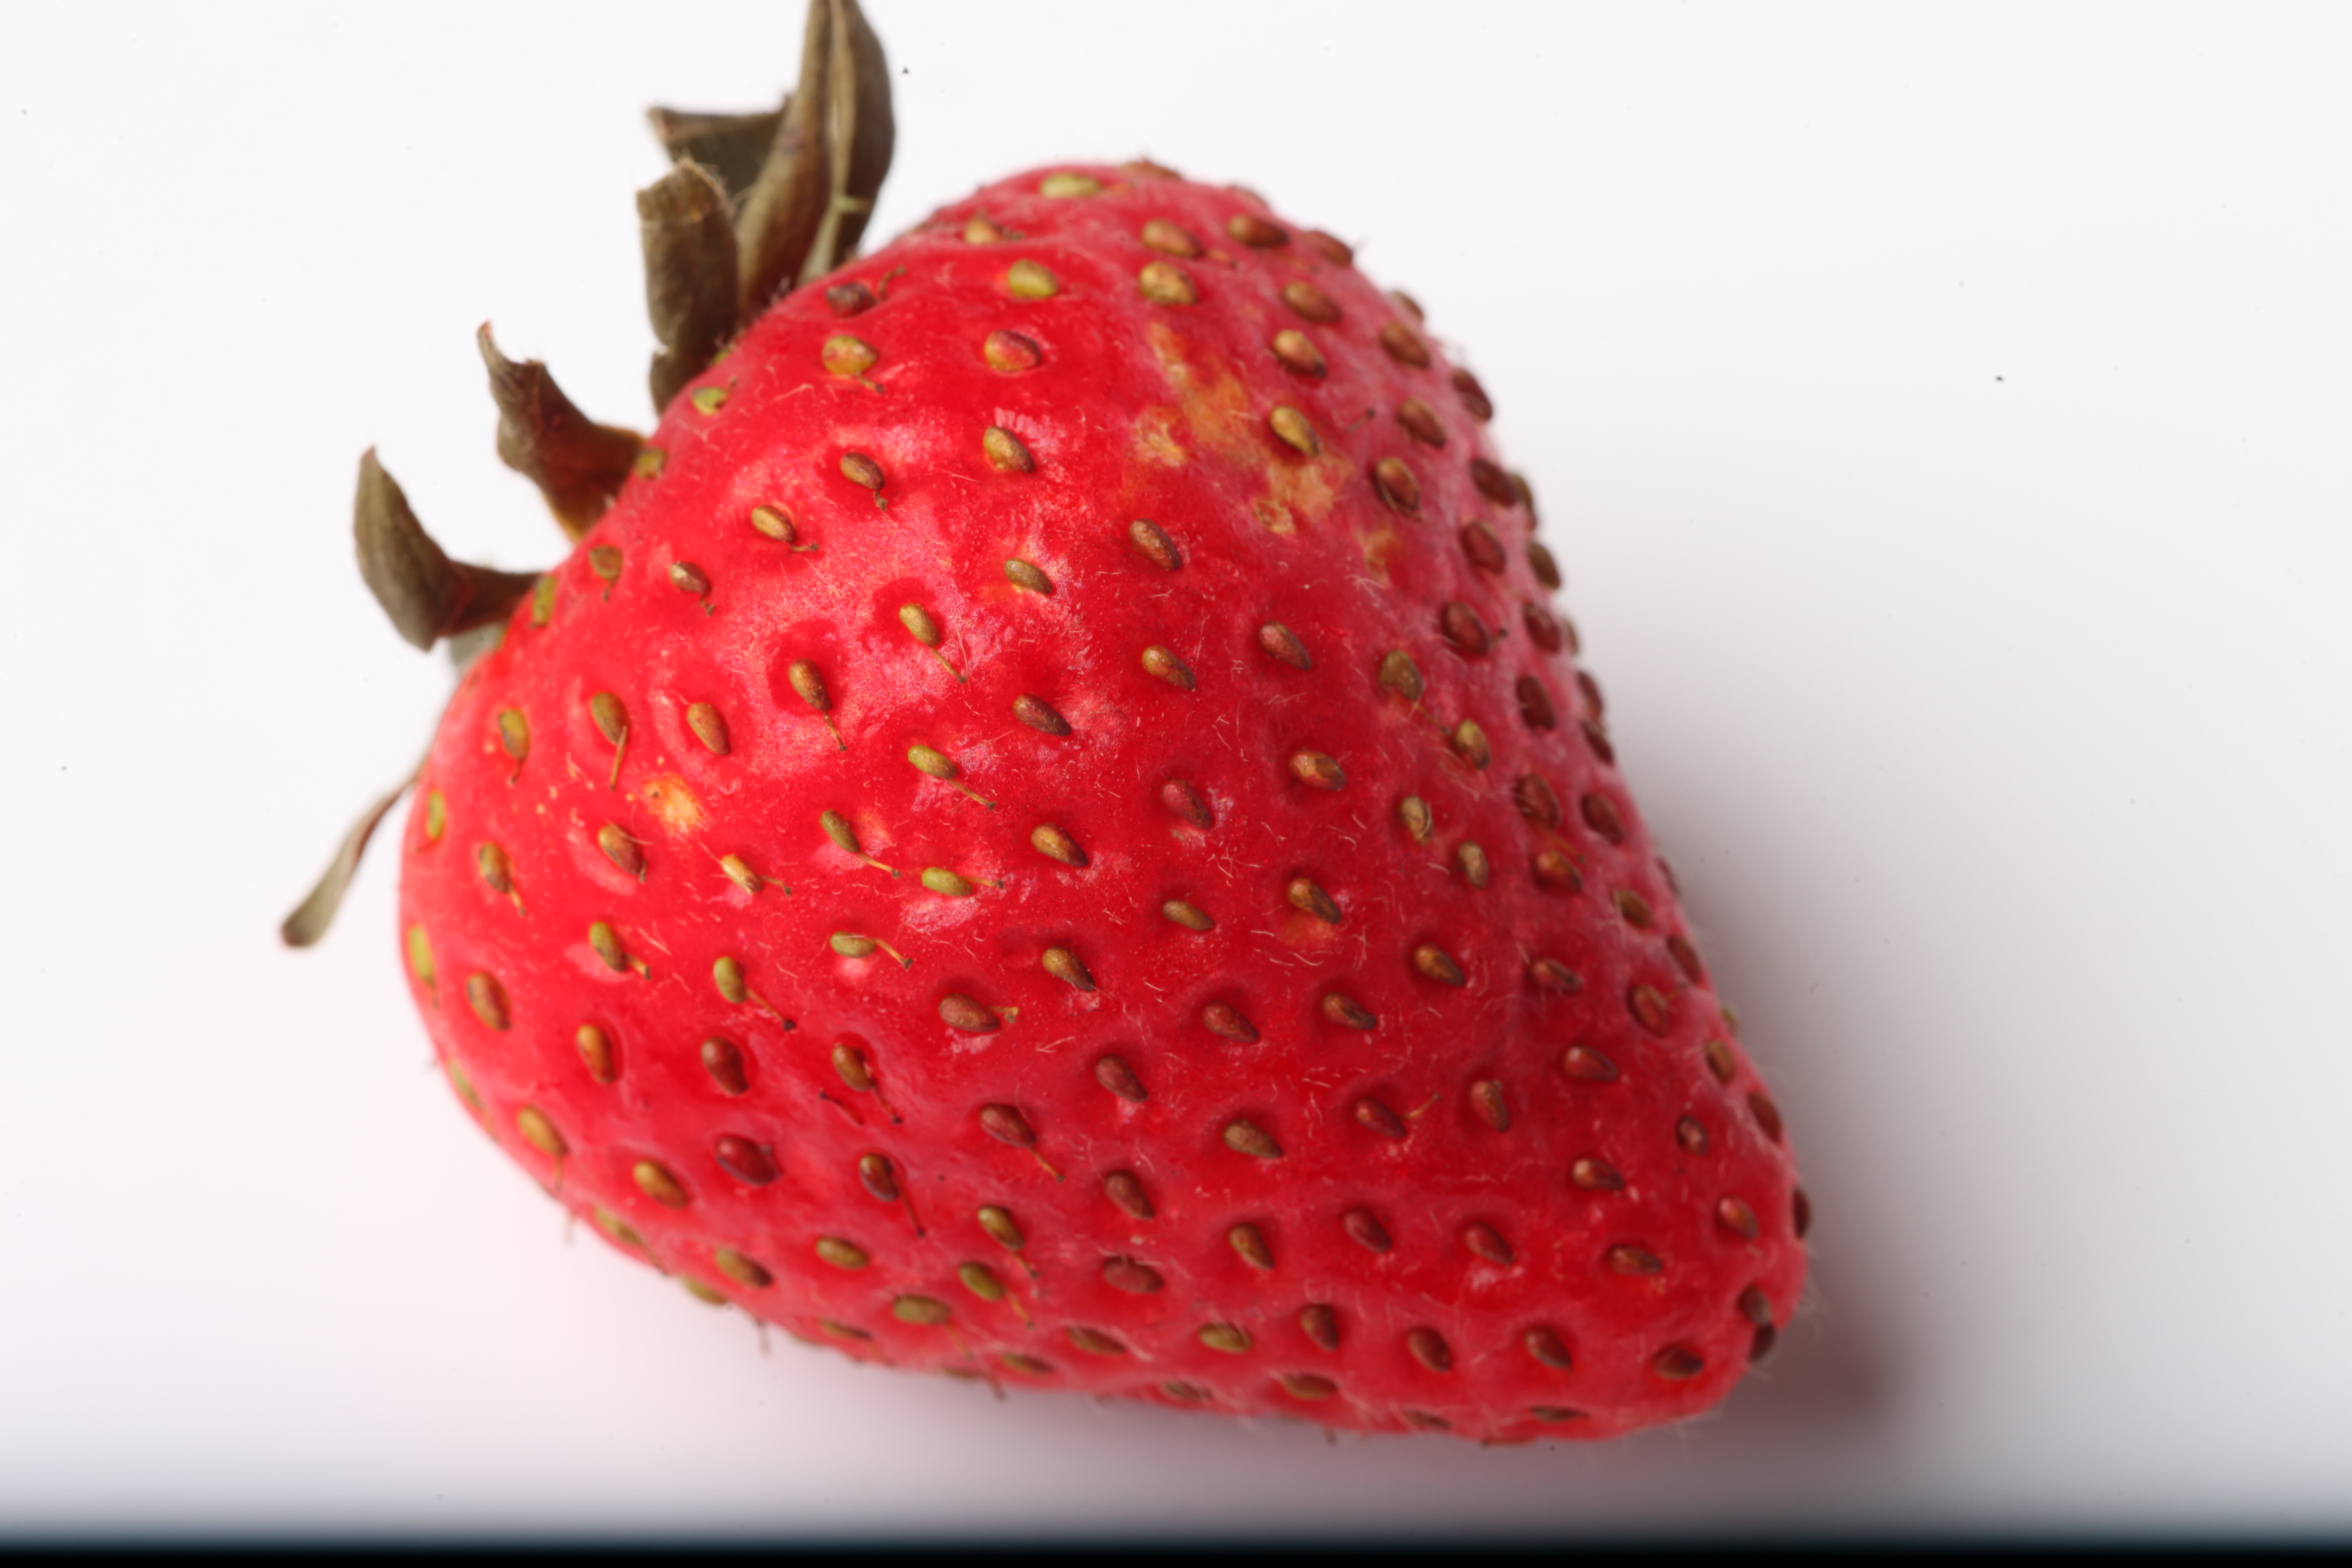 Strawberry isolated on white background photo